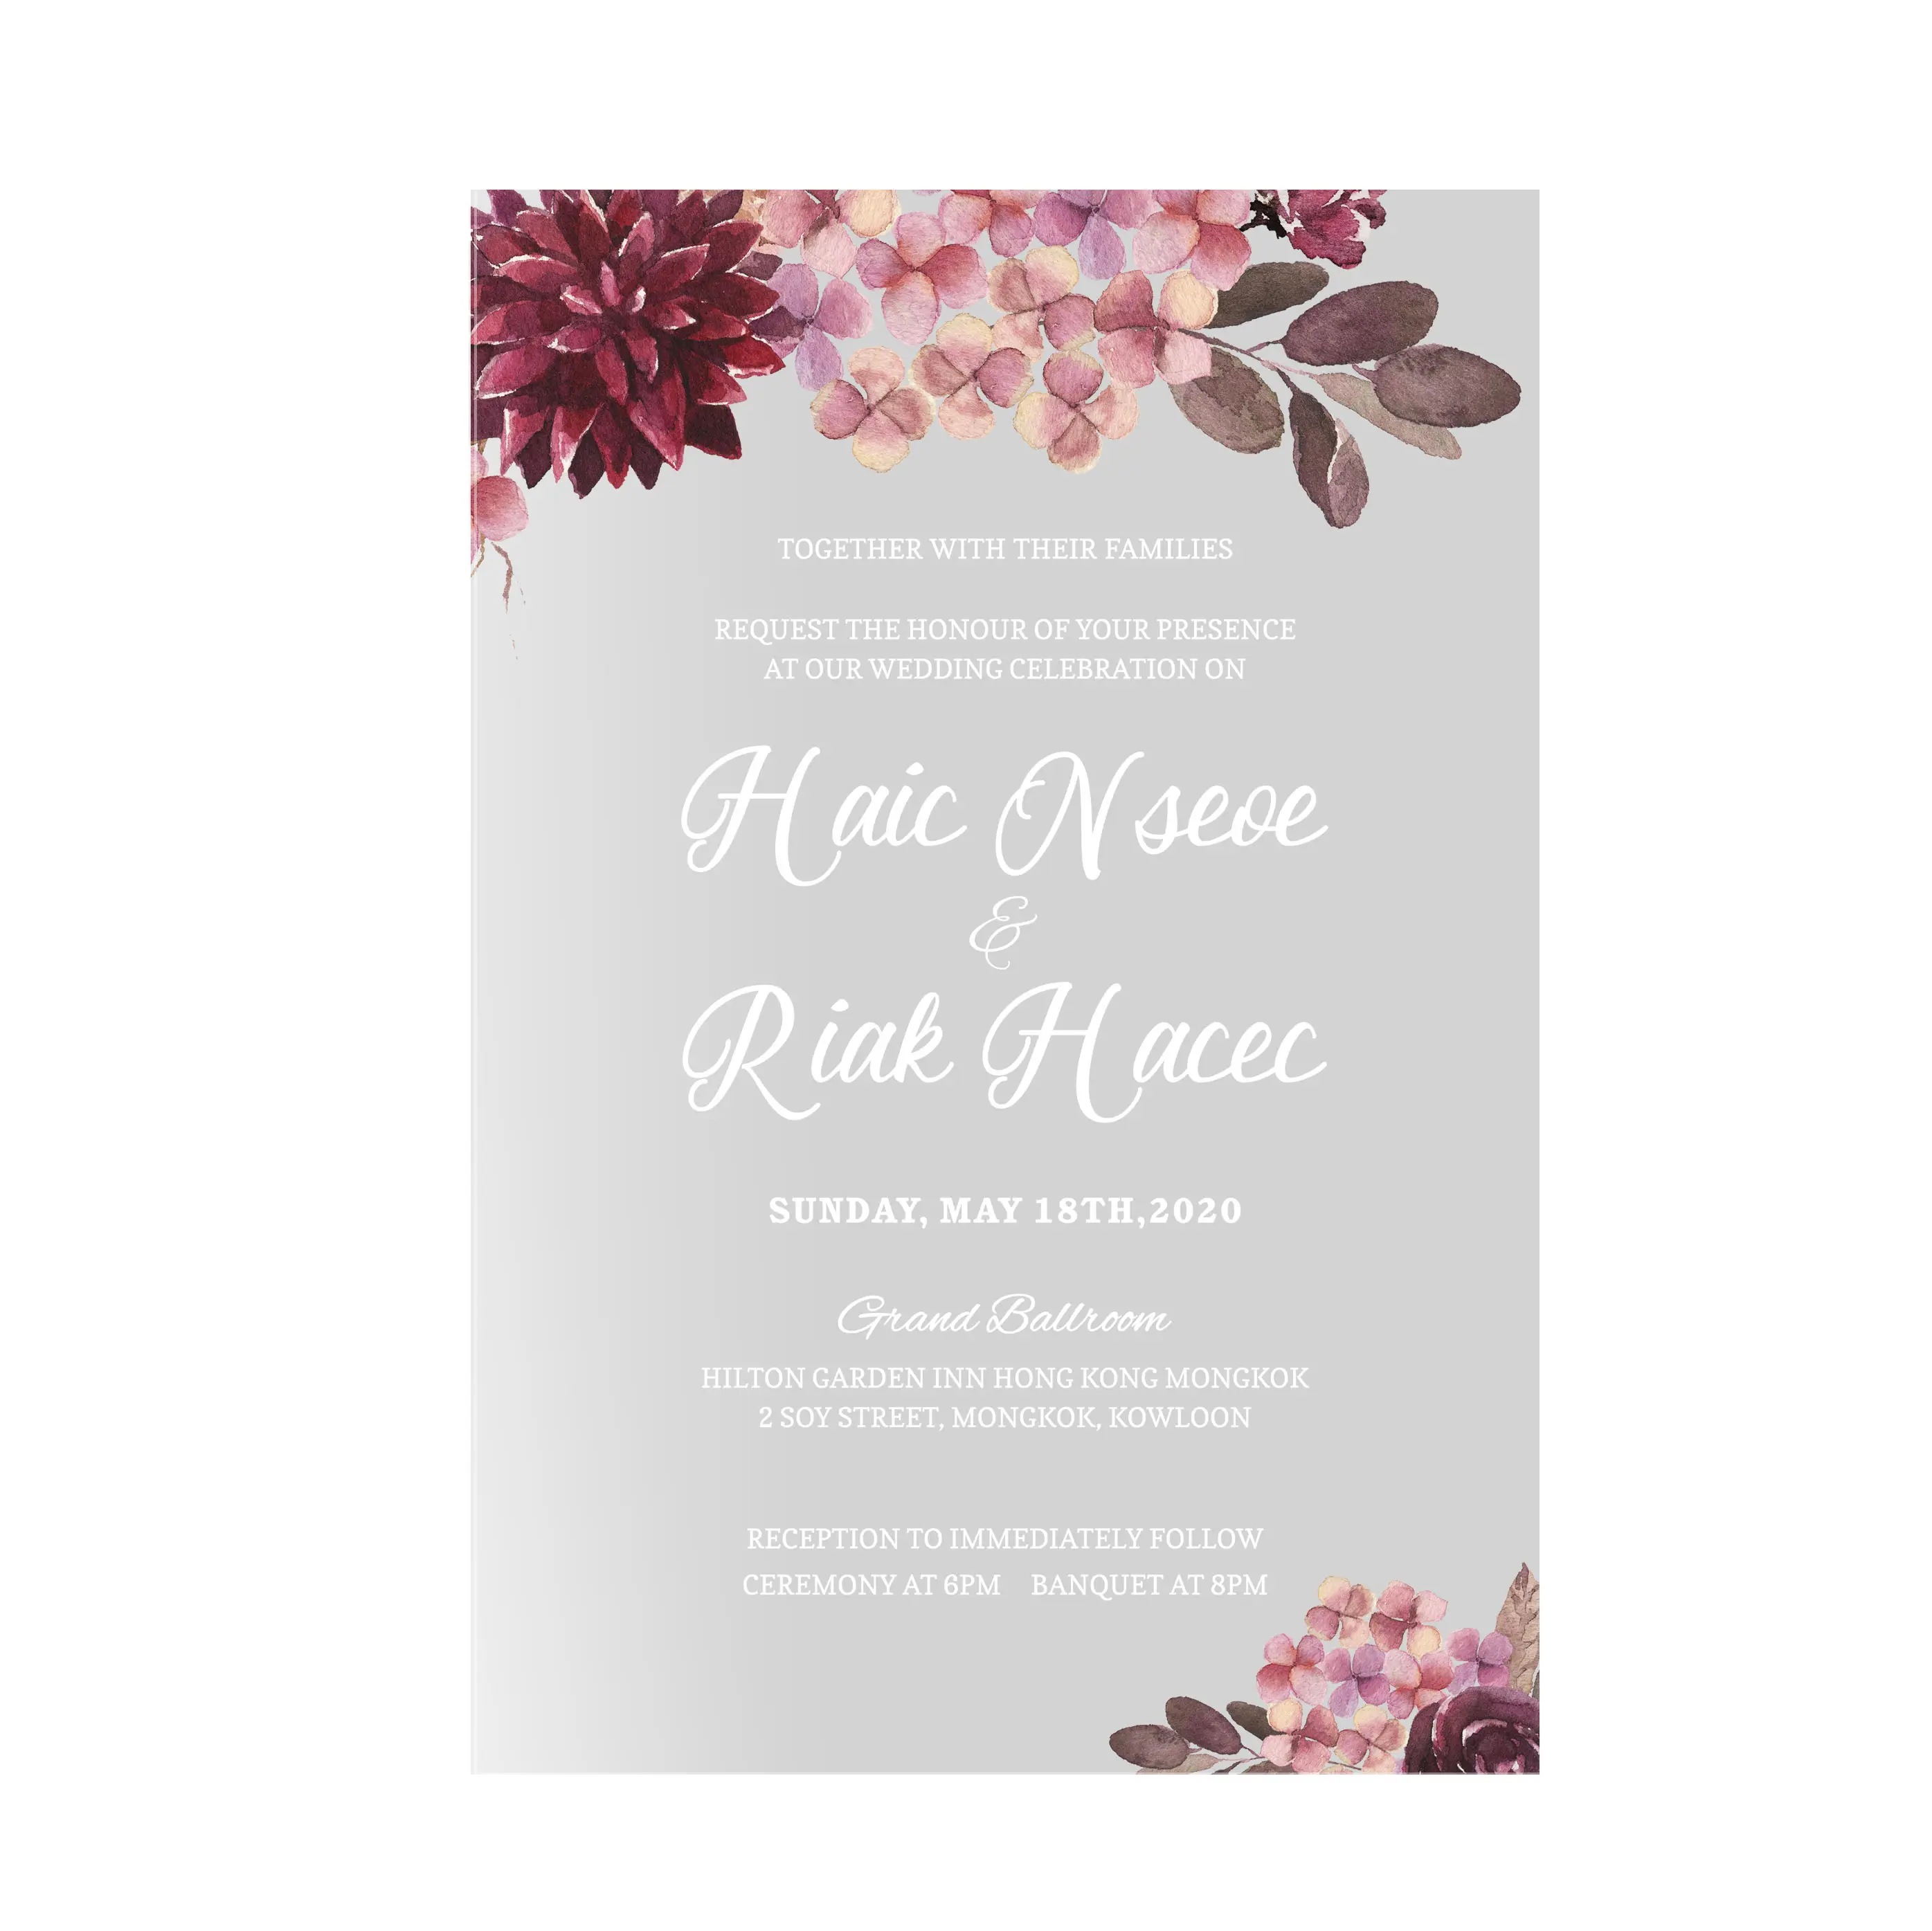 Carte d'invitation en acrylique personnalisée avec livraison gratuite, carton de mariage, nouvelle collection